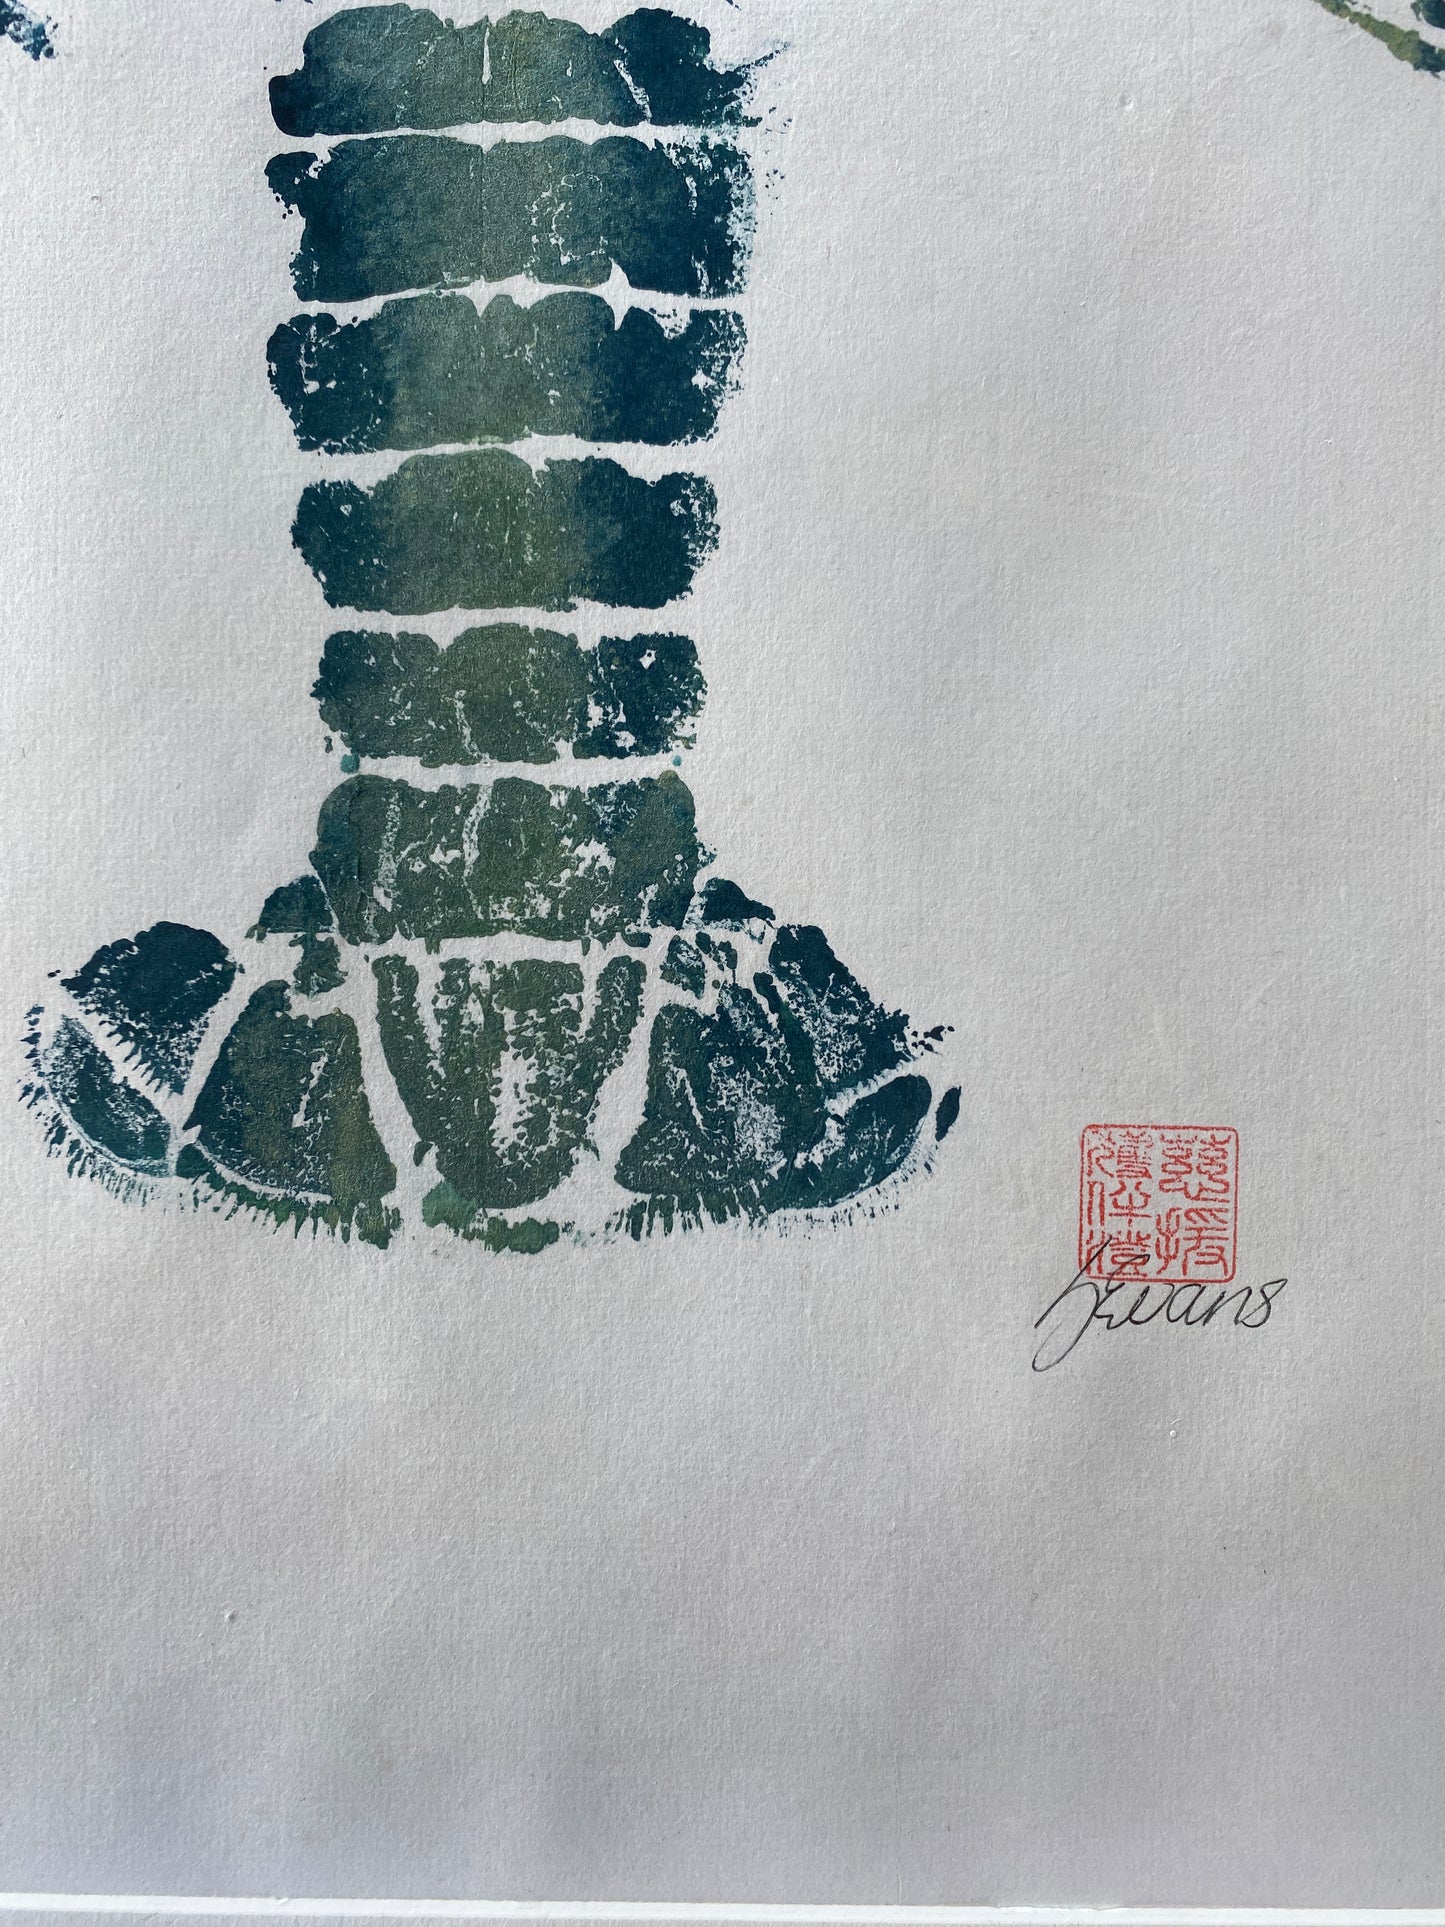 Menai Strait Lobster, Gyotaku Printed and Wet Mounted.